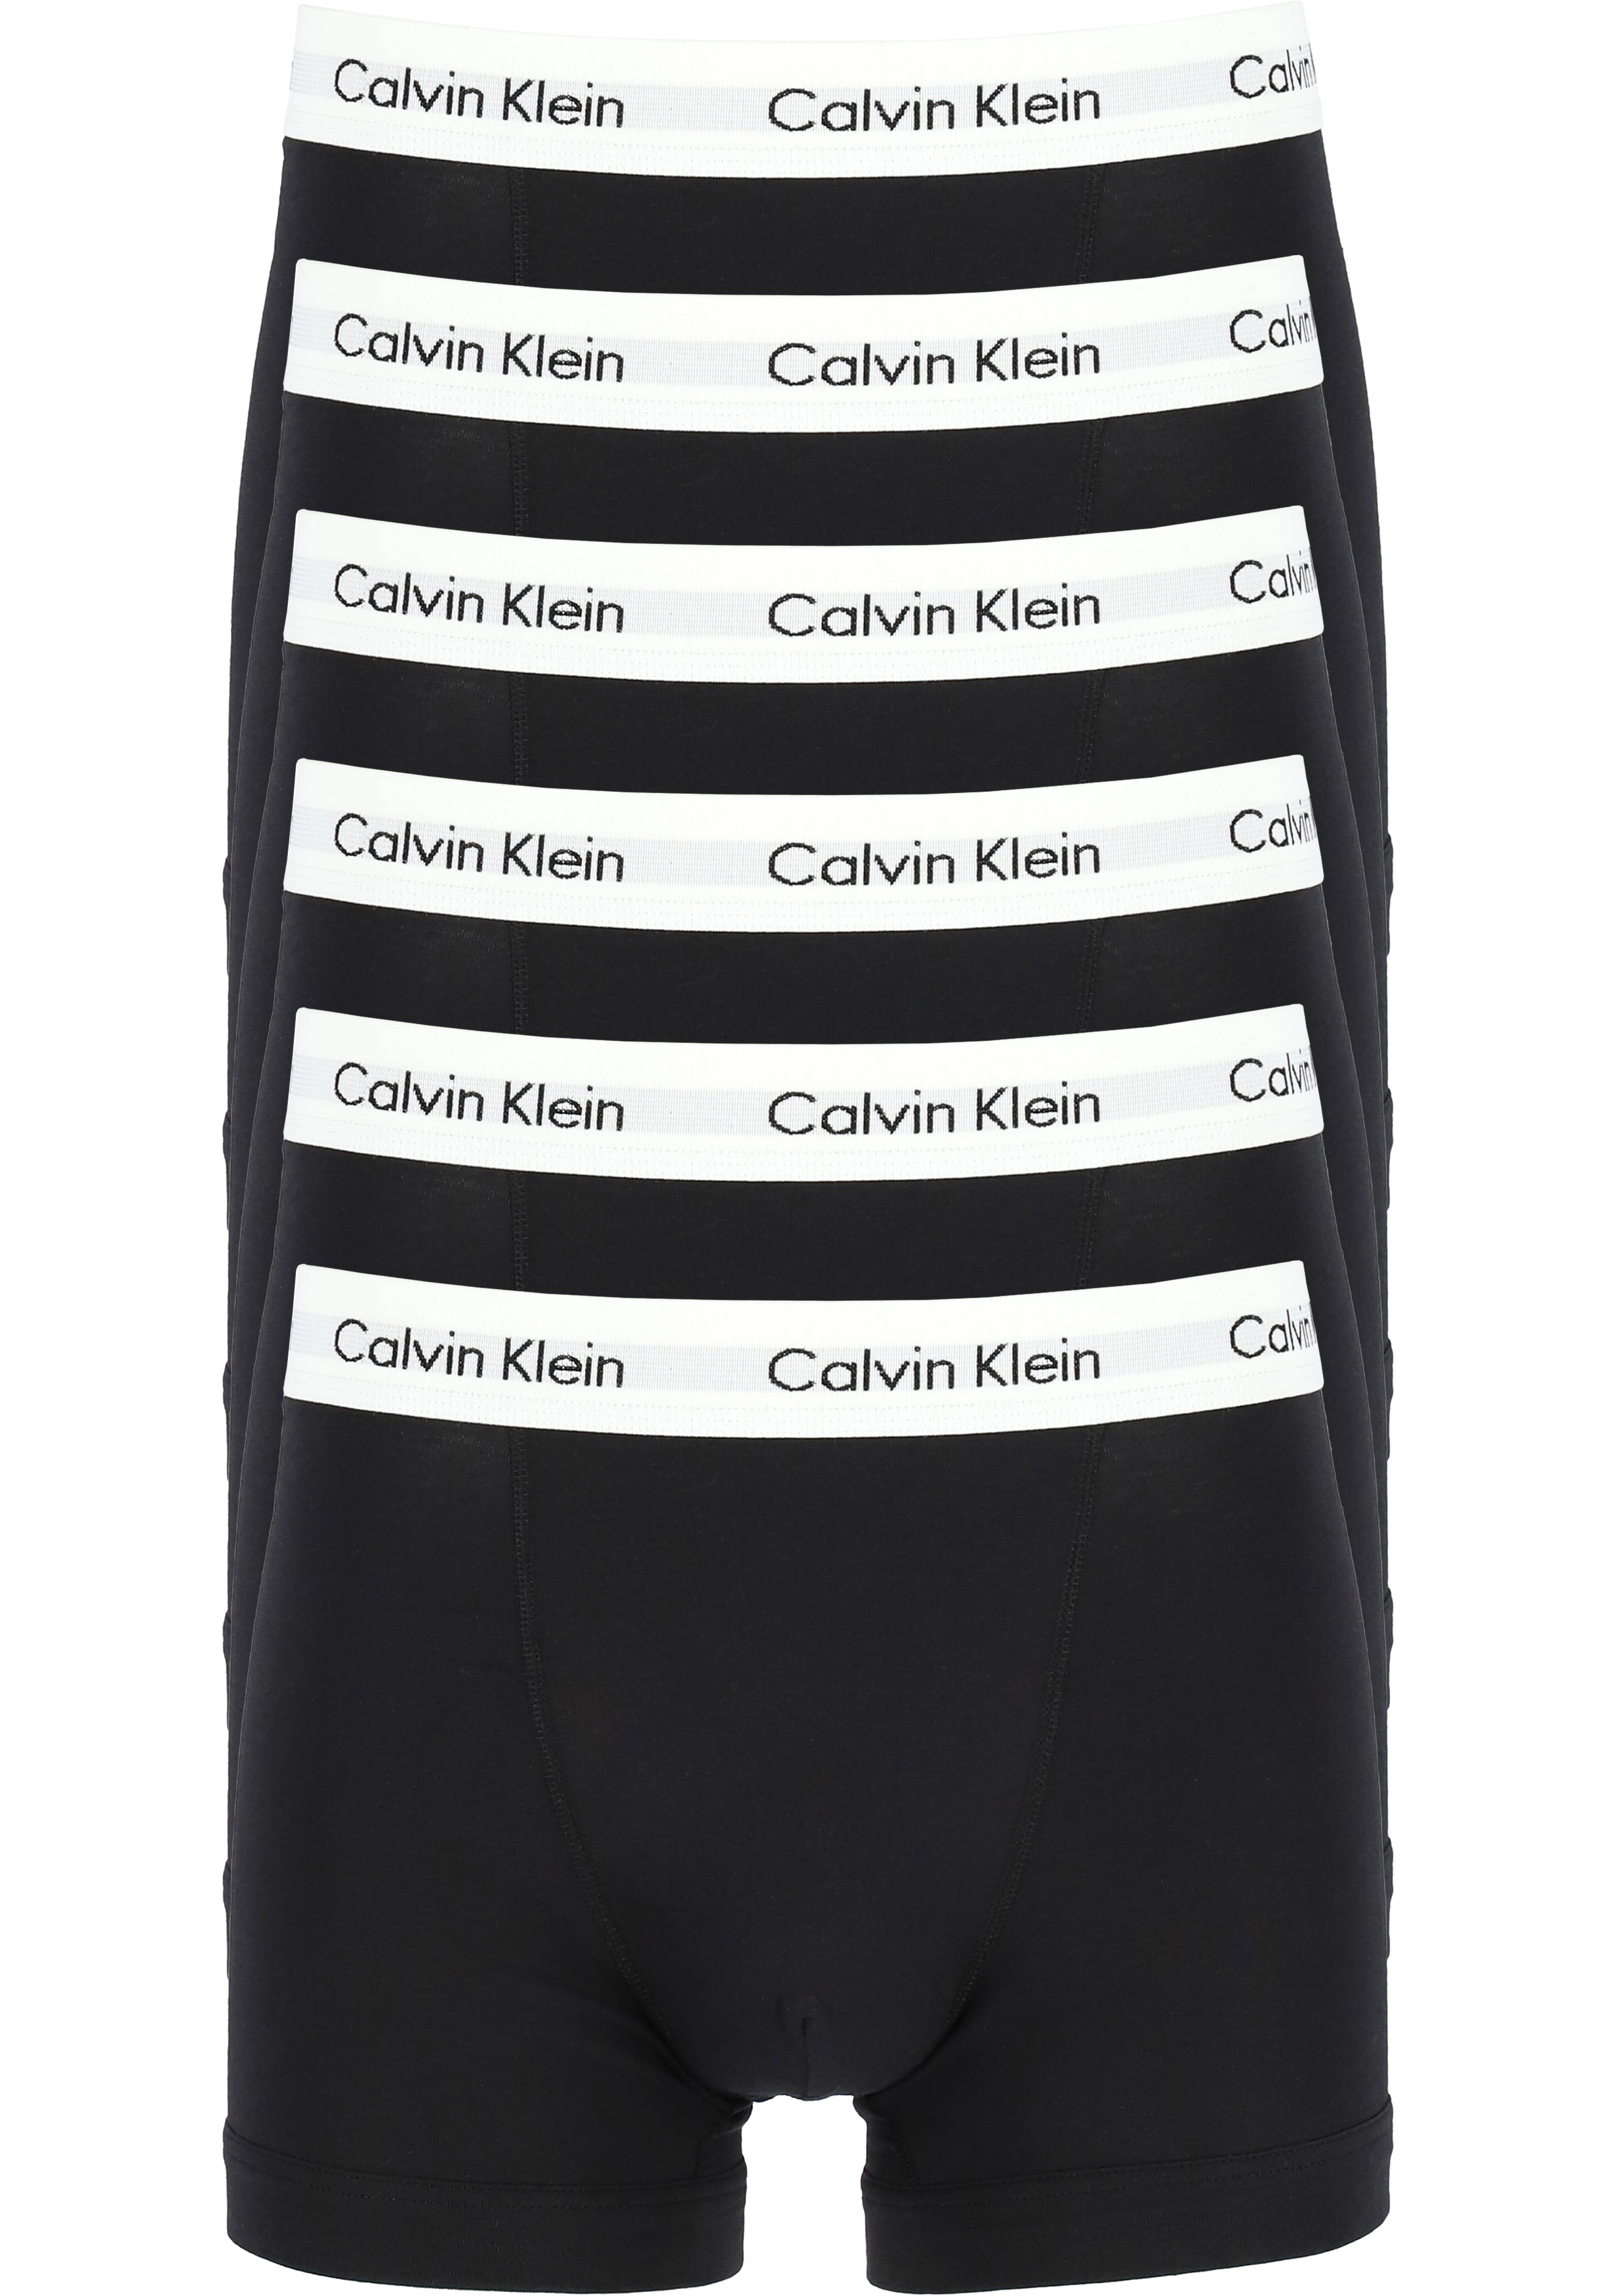 Kritisch Accommodatie dynamisch Actie 6-pack: Calvin Klein trunks, heren boxers normale lengte, zwart -  Zomer SALE tot 50% korting